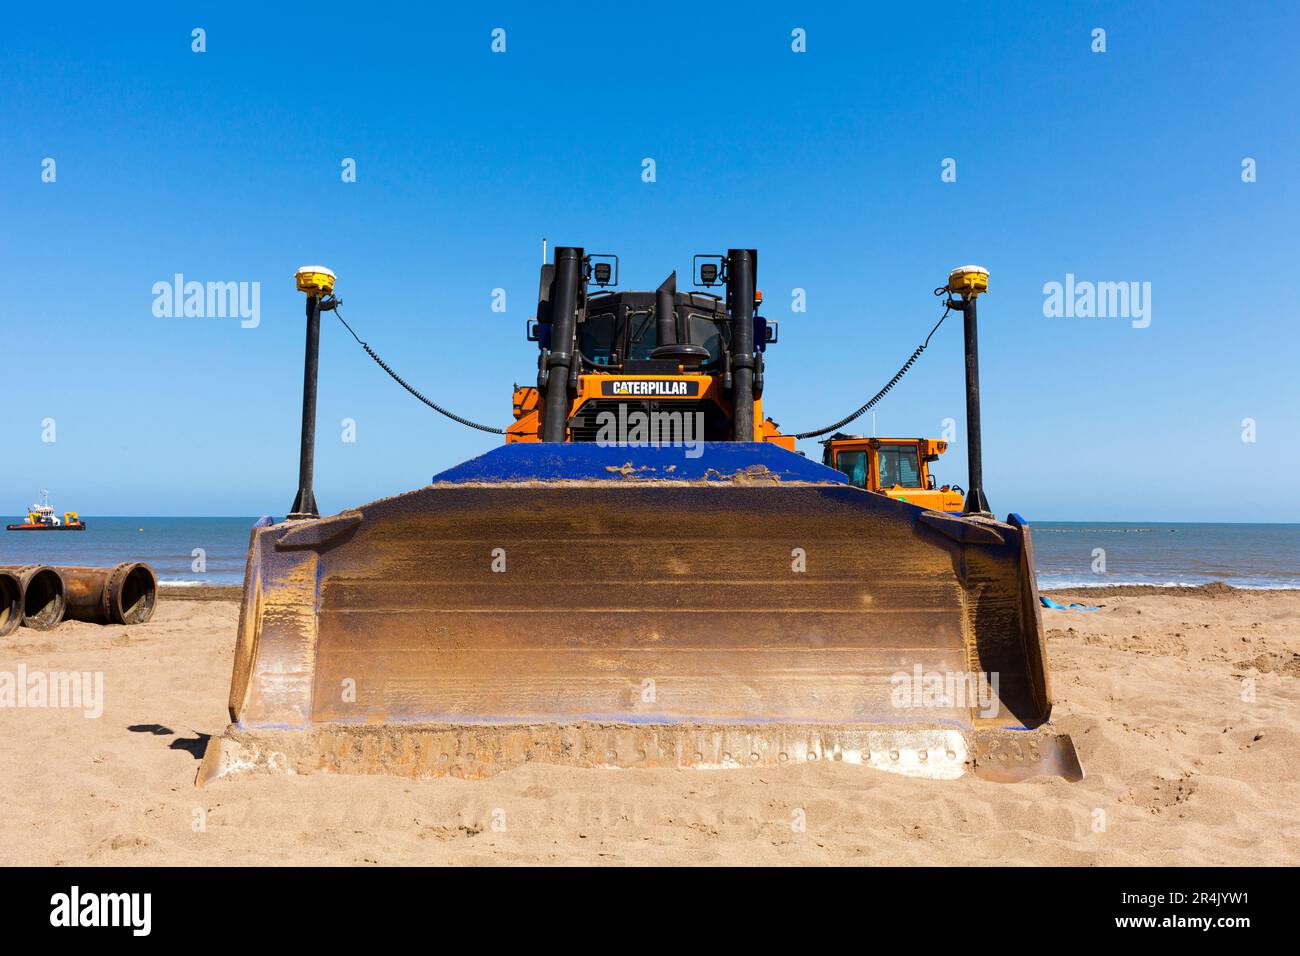 Caterpillar terrassement travaillant sur un projet d'entretien des plages et de défense côtière de l'agence environnementale à Lincolnshire, Angleterre, Royaume-Uni Banque D'Images